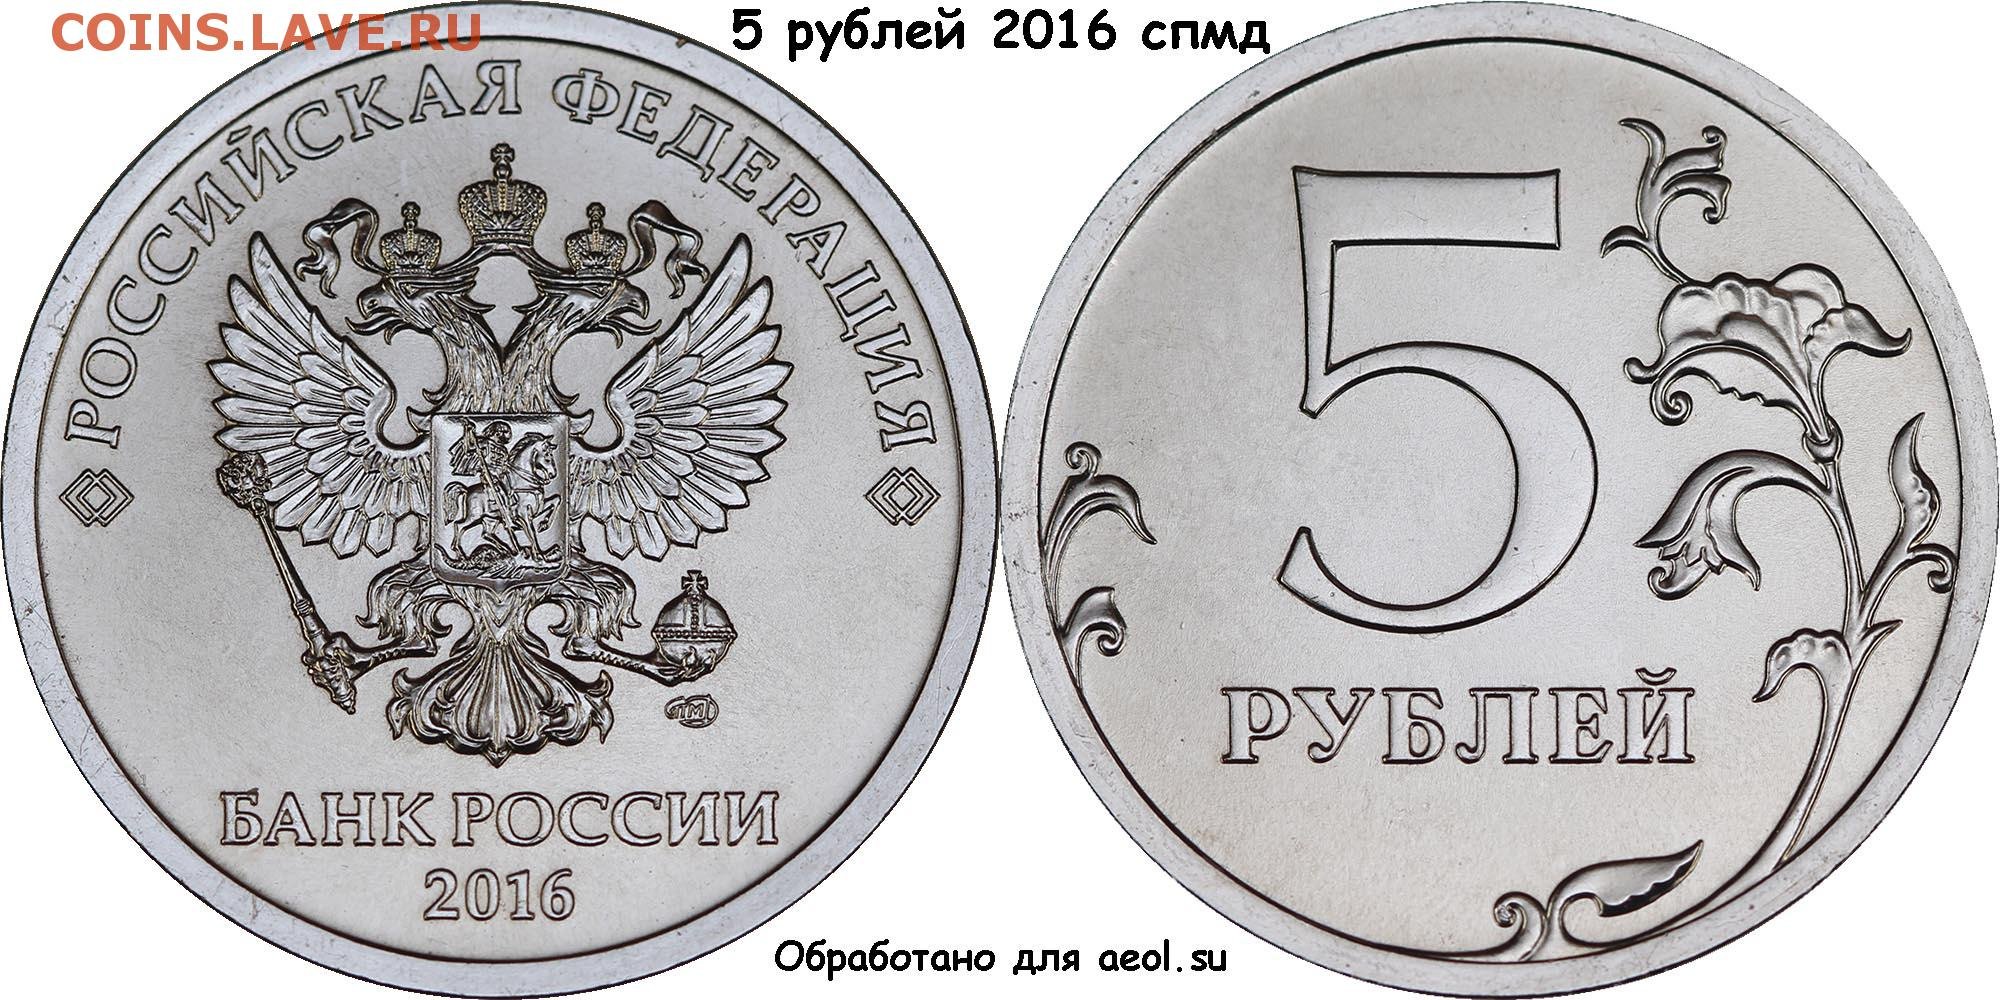 Ценные 5 рублей россии. 5 Рублей 2016 года СПМД. Монета 1 рубль 2016 года СПМД. 5 Рублевые монеты СПМД. 5 Рублей 2016 СПМД.